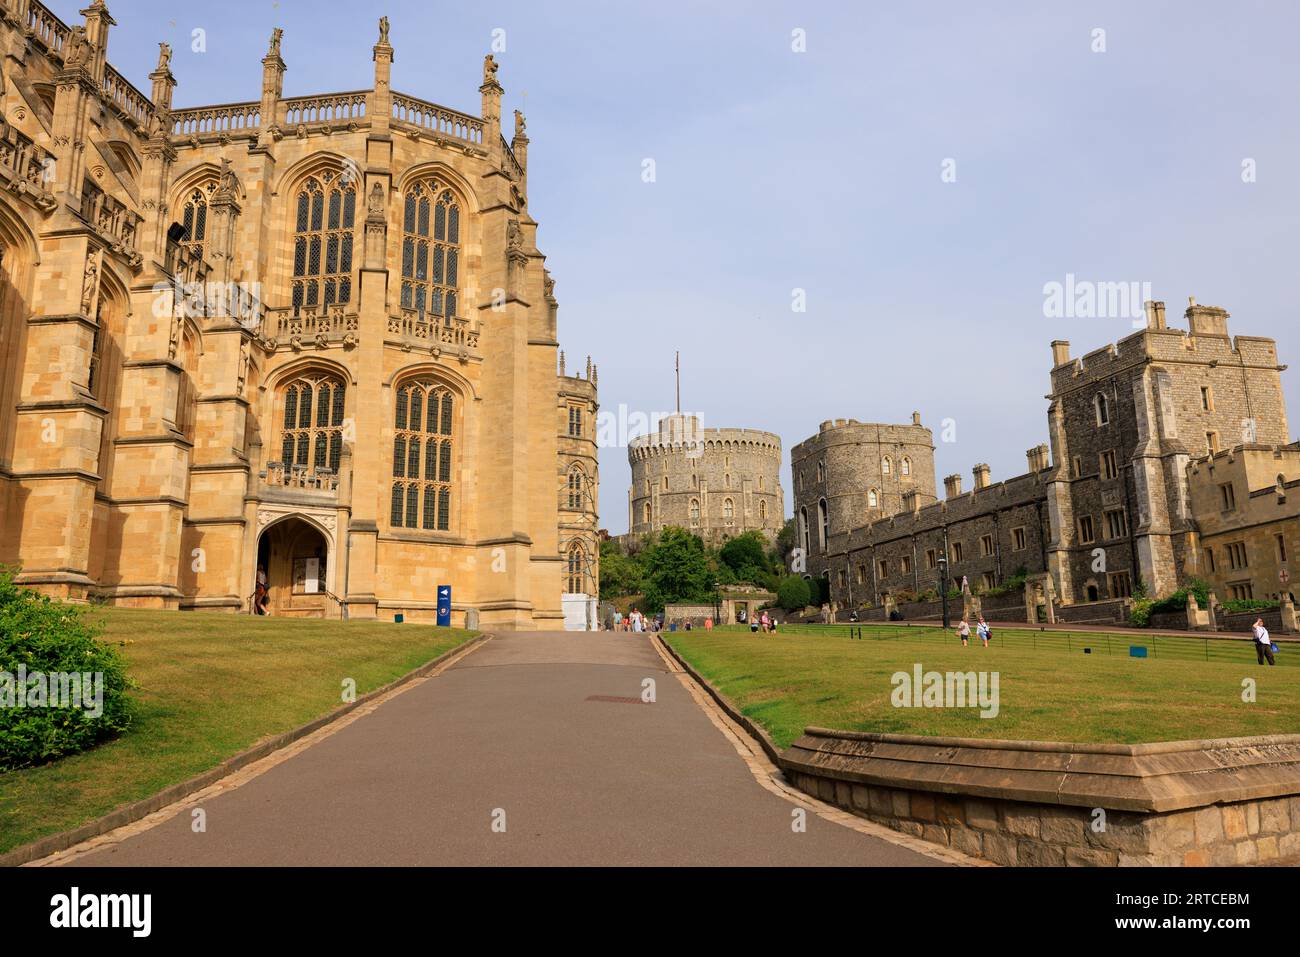 La chapelle St George du château de Windsor en Angleterre est une chapelle construite dans le style gothique perpendiculaire de la fin du Moyen âge. Banque D'Images